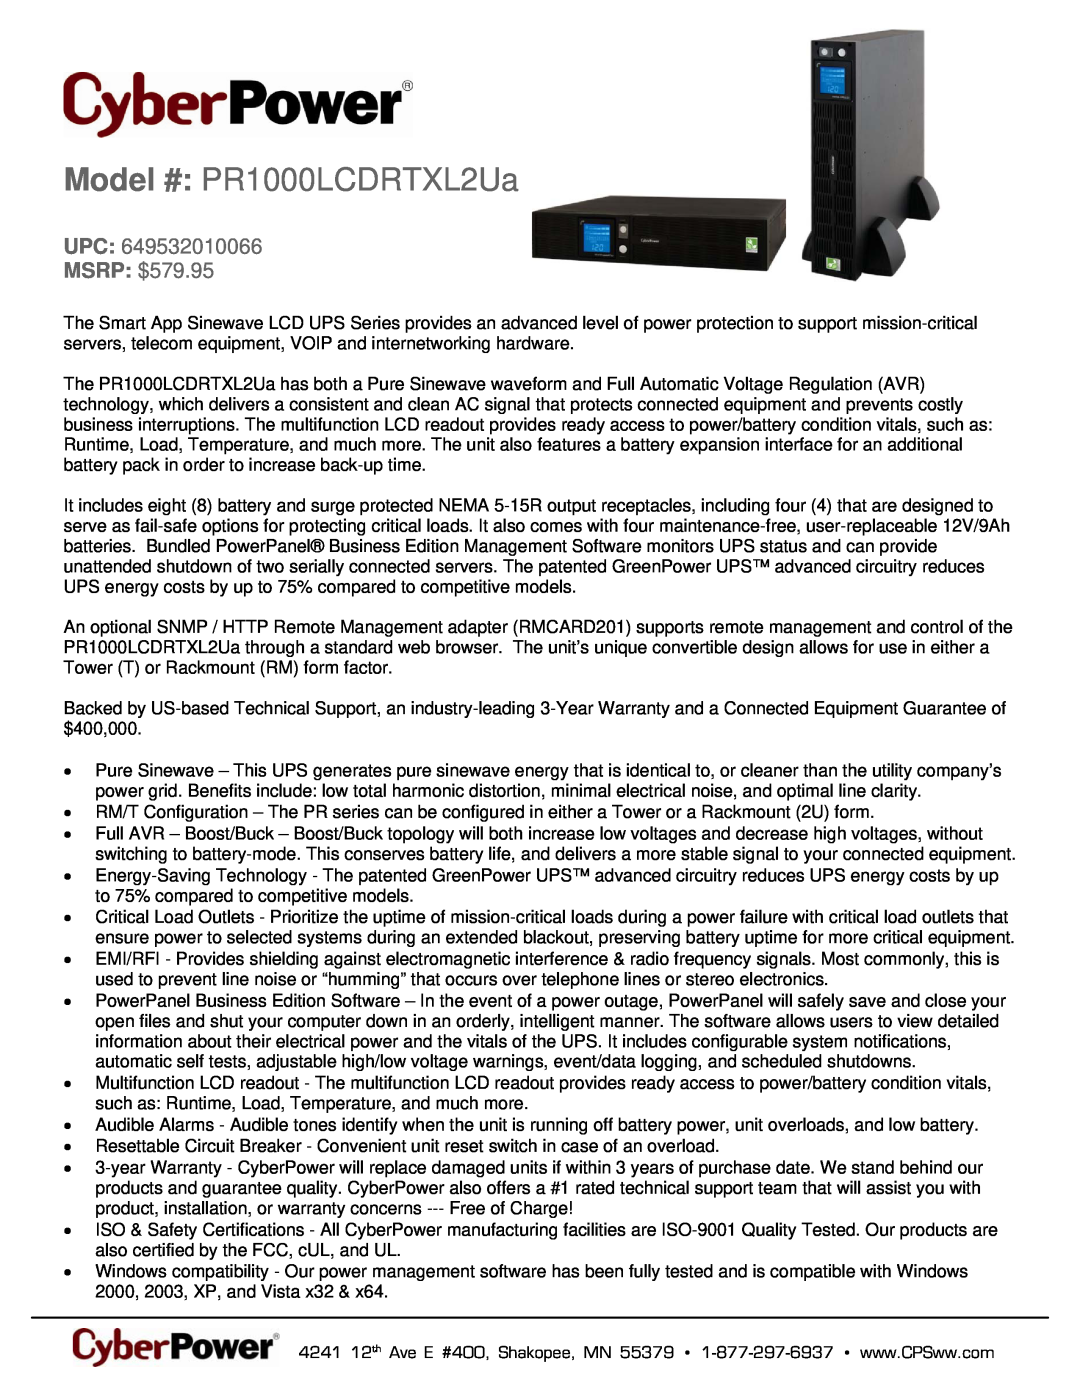 CyberPower Systems 649532010066 warranty Model # PR1000LCDRTXL2Ua, UPC MSRP $579.95 